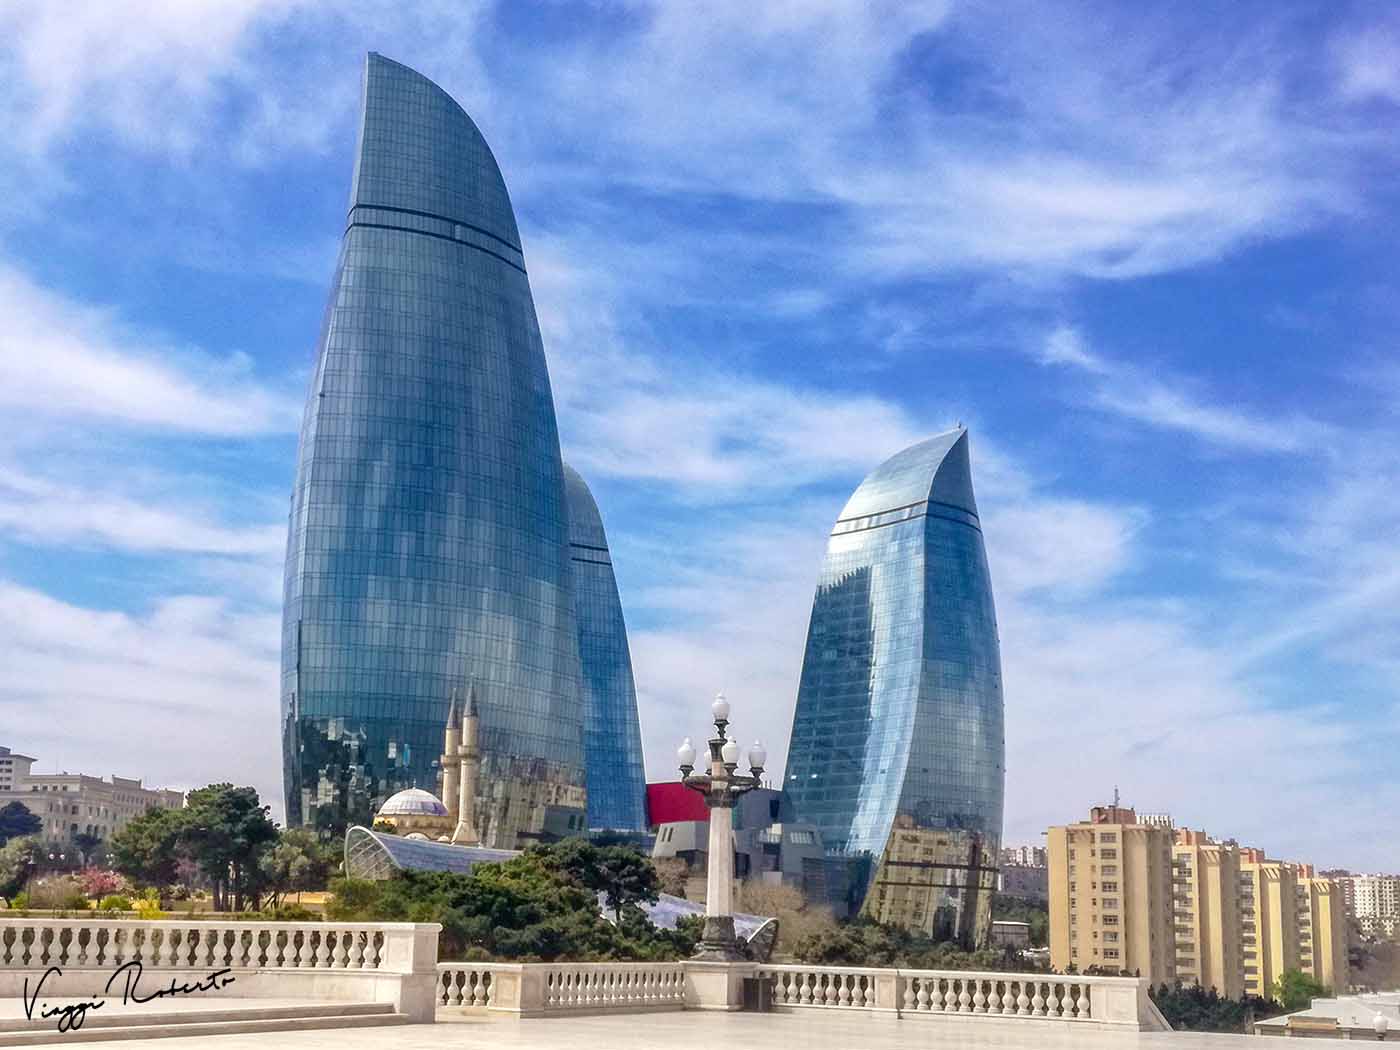 Azerbaigian